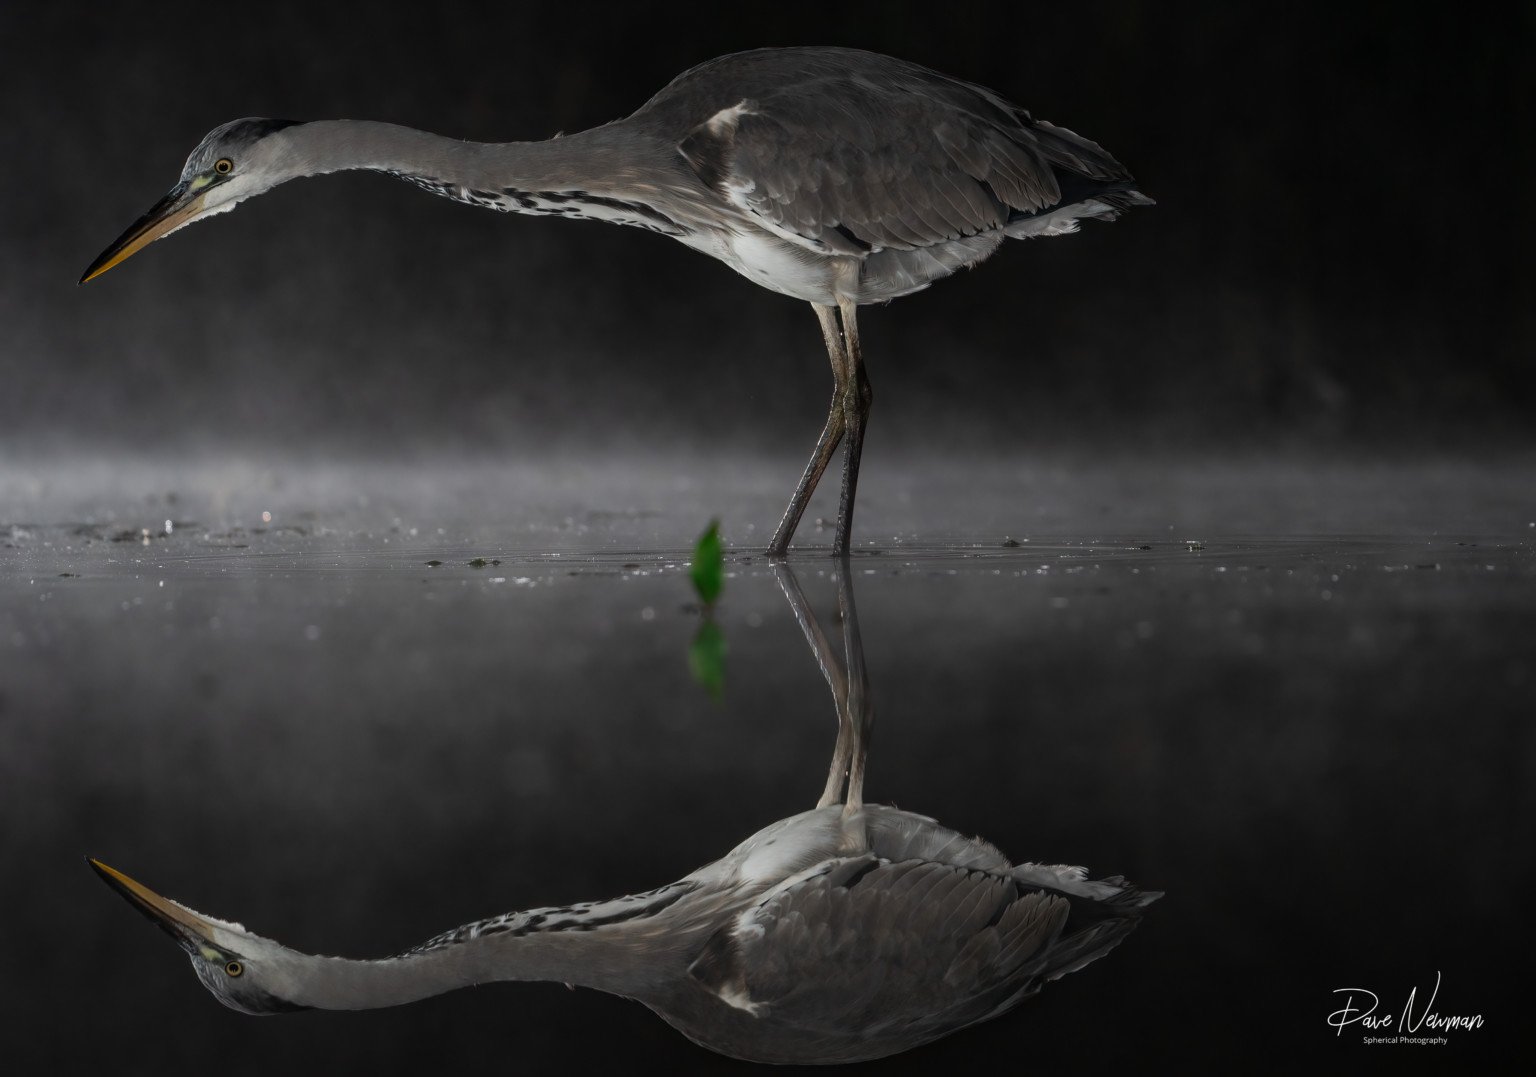  Một con cò đứng trong nước với hình ảnh phản chiếu của nó trên bề mặt 